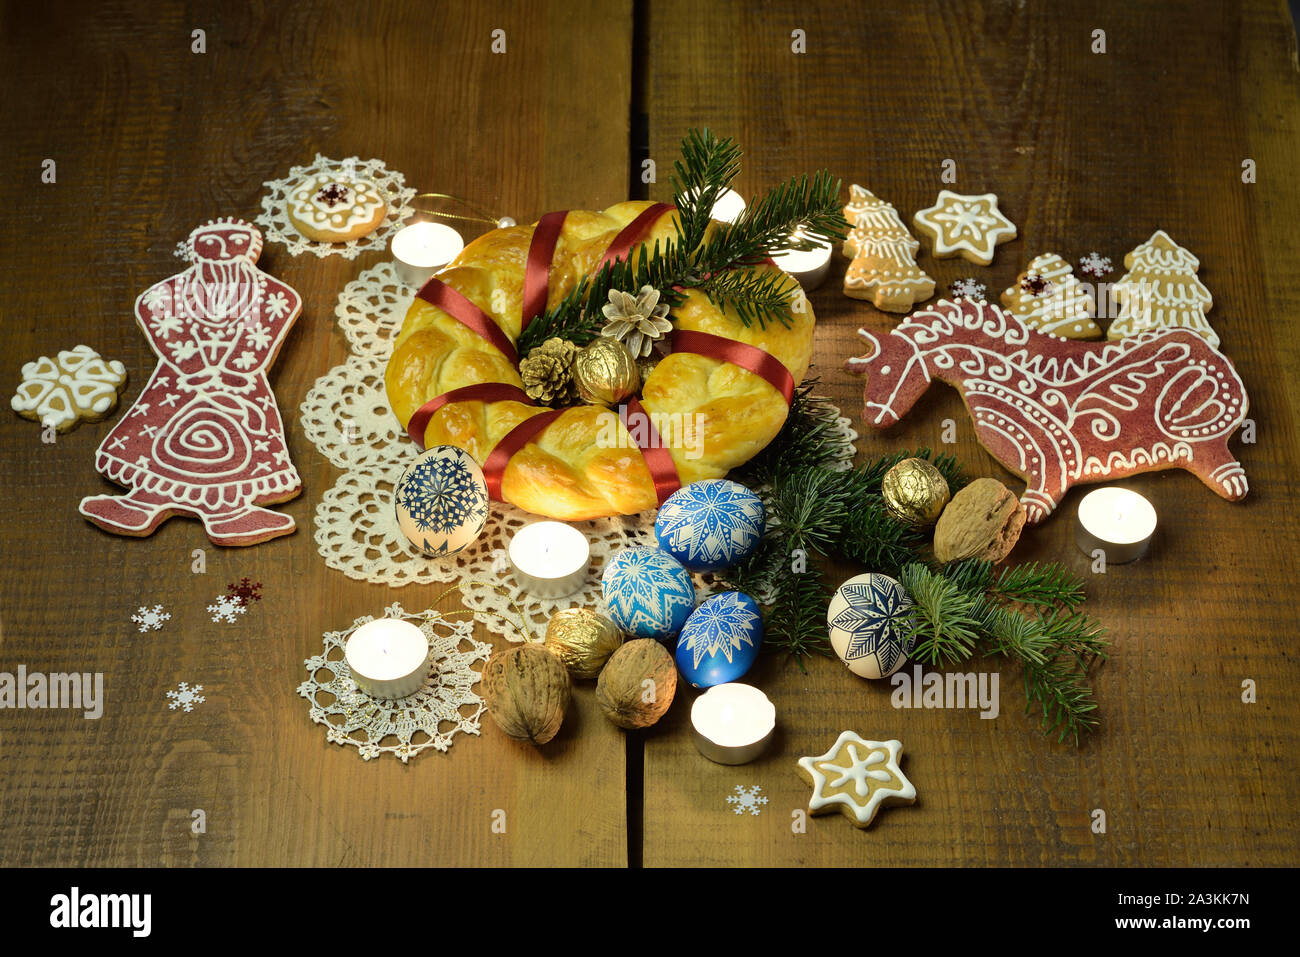 Weihnachten Brot unter den Lebkuchen Kekse, bemalte Eier, Walnüsse, und Kerzen auf dem Tisch Stockfoto